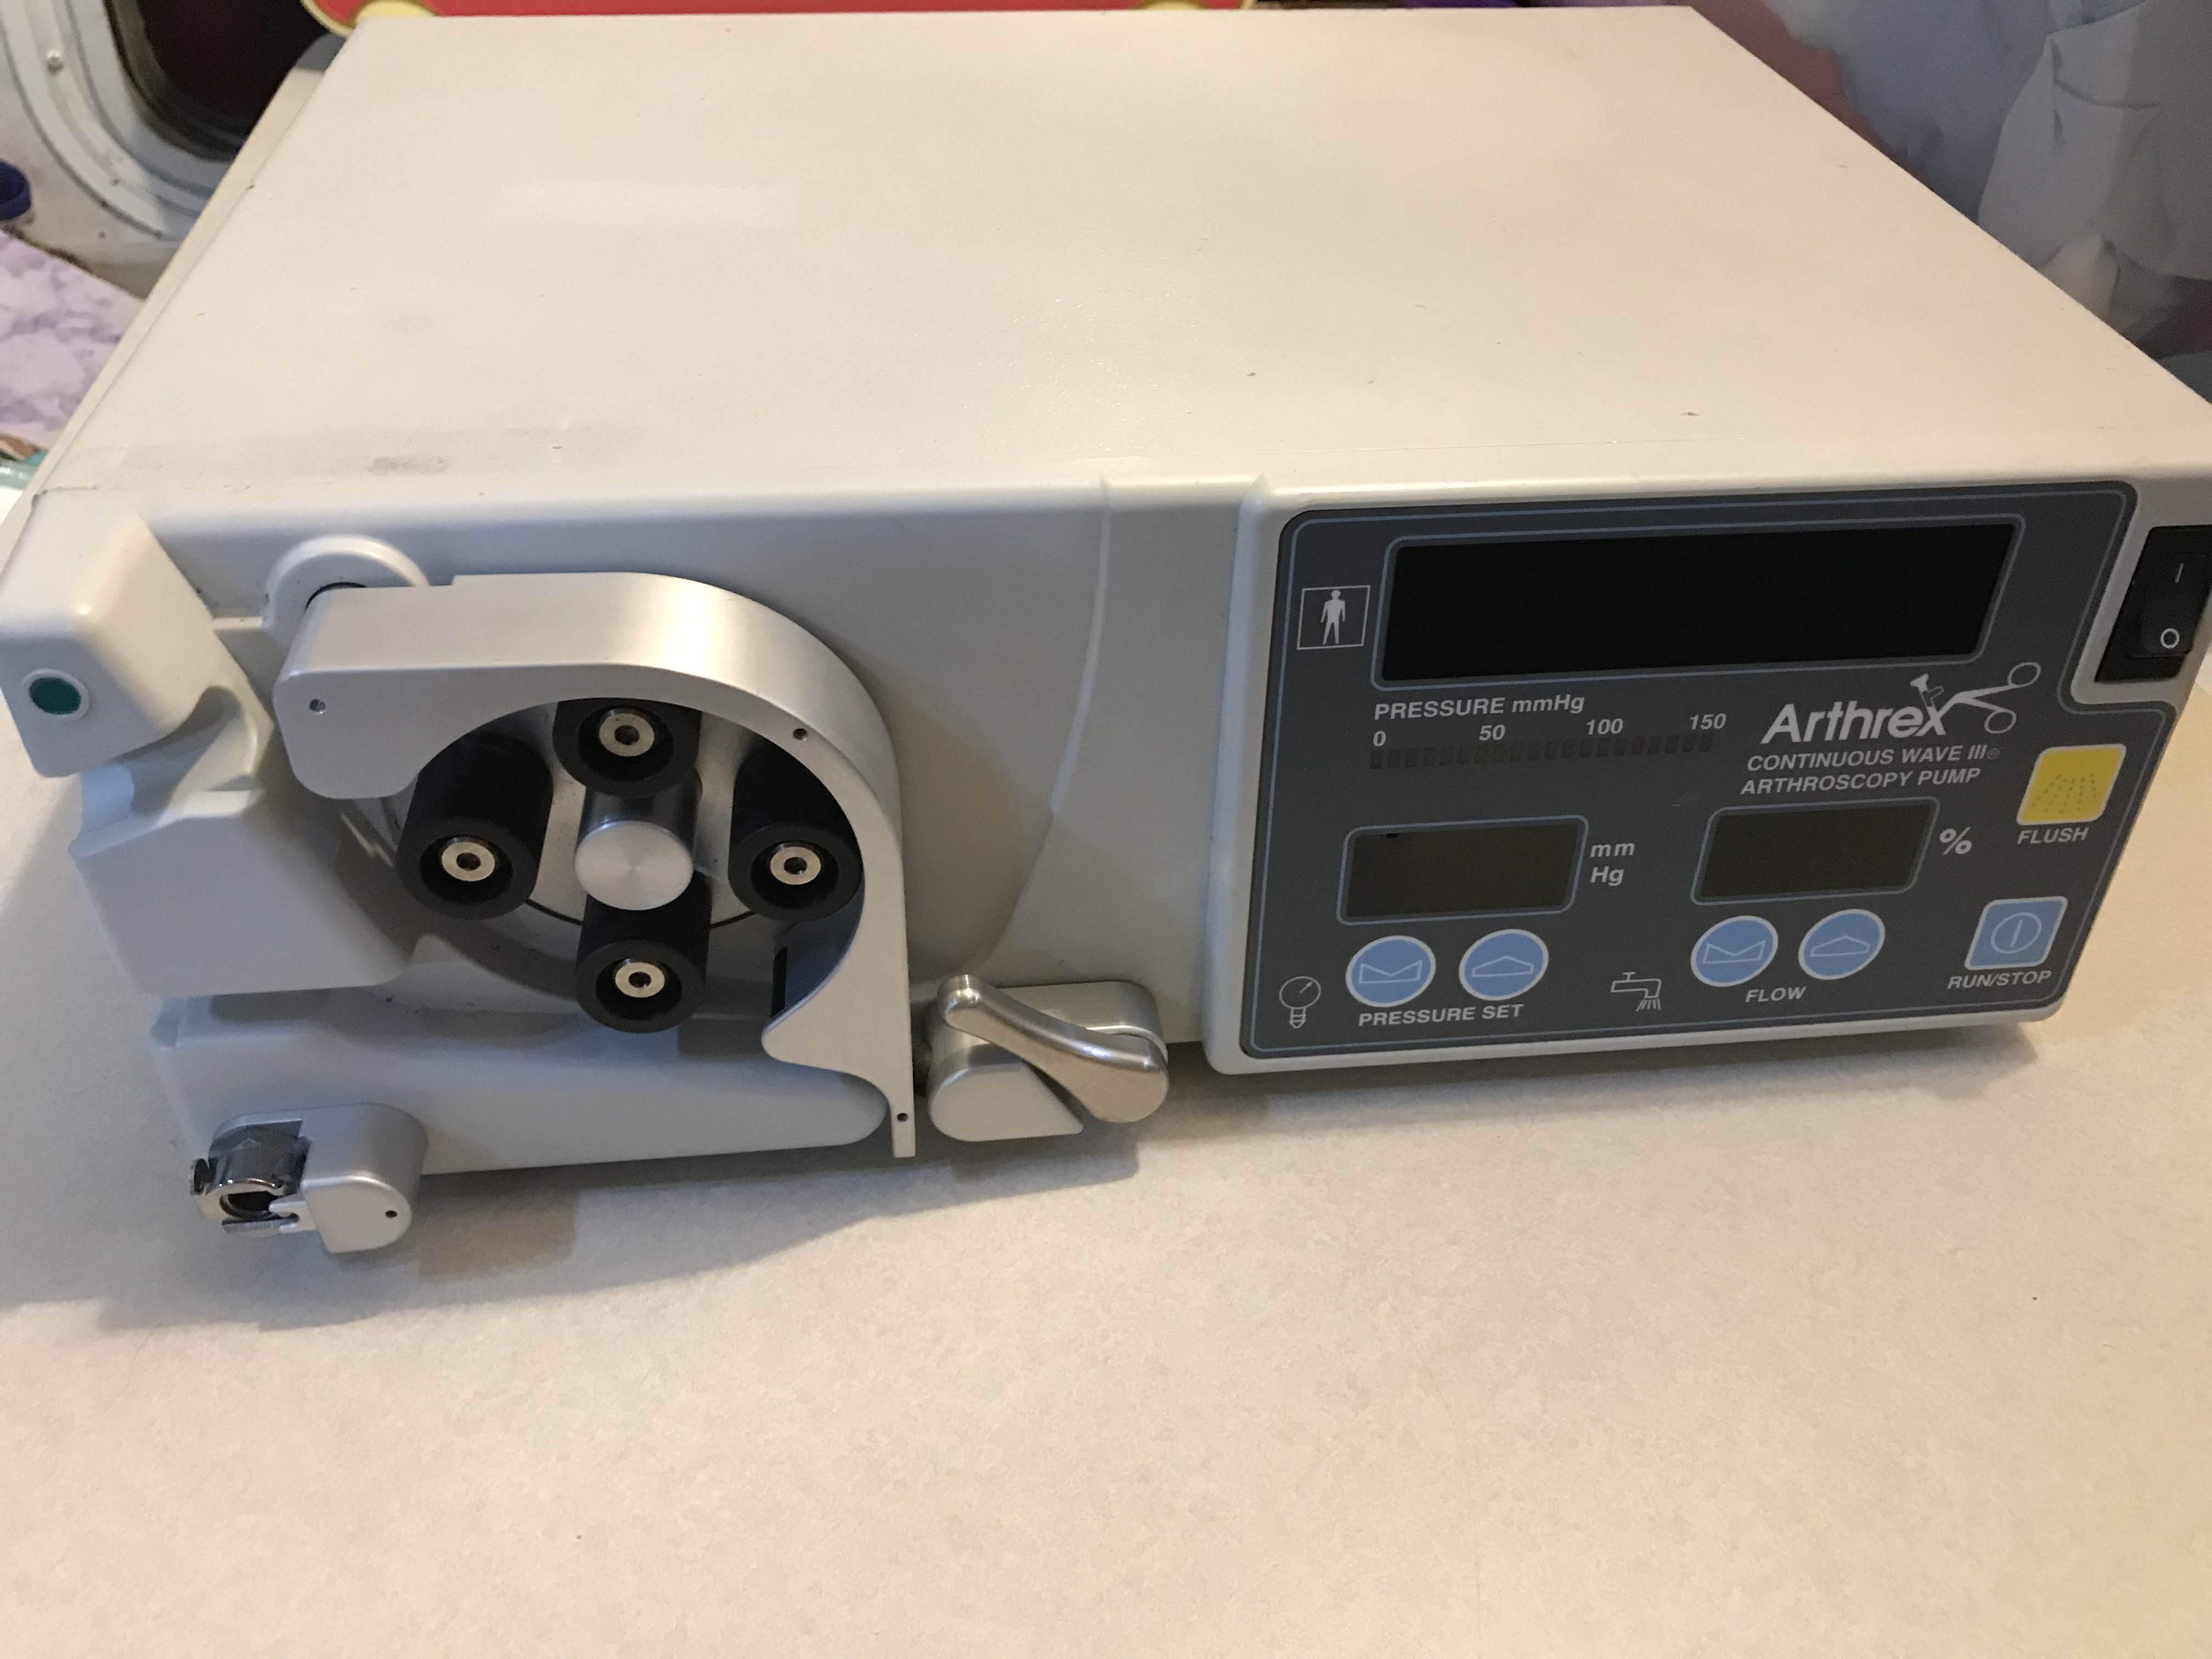 ARTHREX AR-6475 Continuous Wave III Arthroskopie  Pumpe